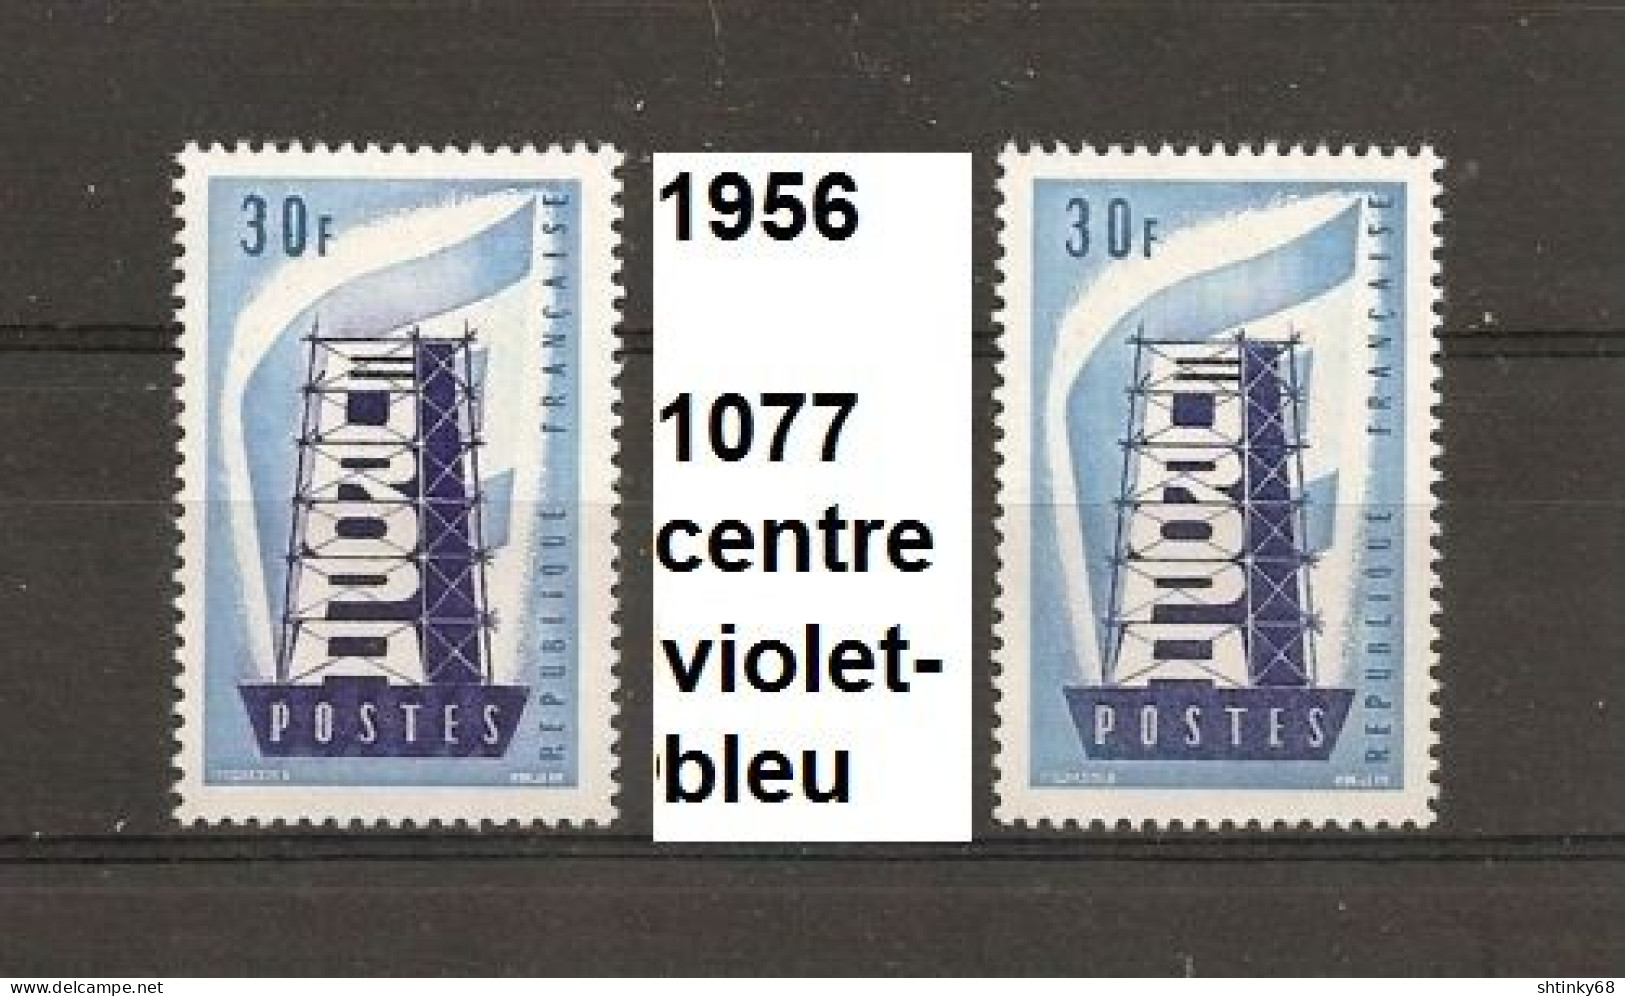 Variété De 1956 Neuf** Y&T N° 1077 Couleur Du Centre Rose-bleu Au Lieu De Bleu-foncé - Ungebraucht